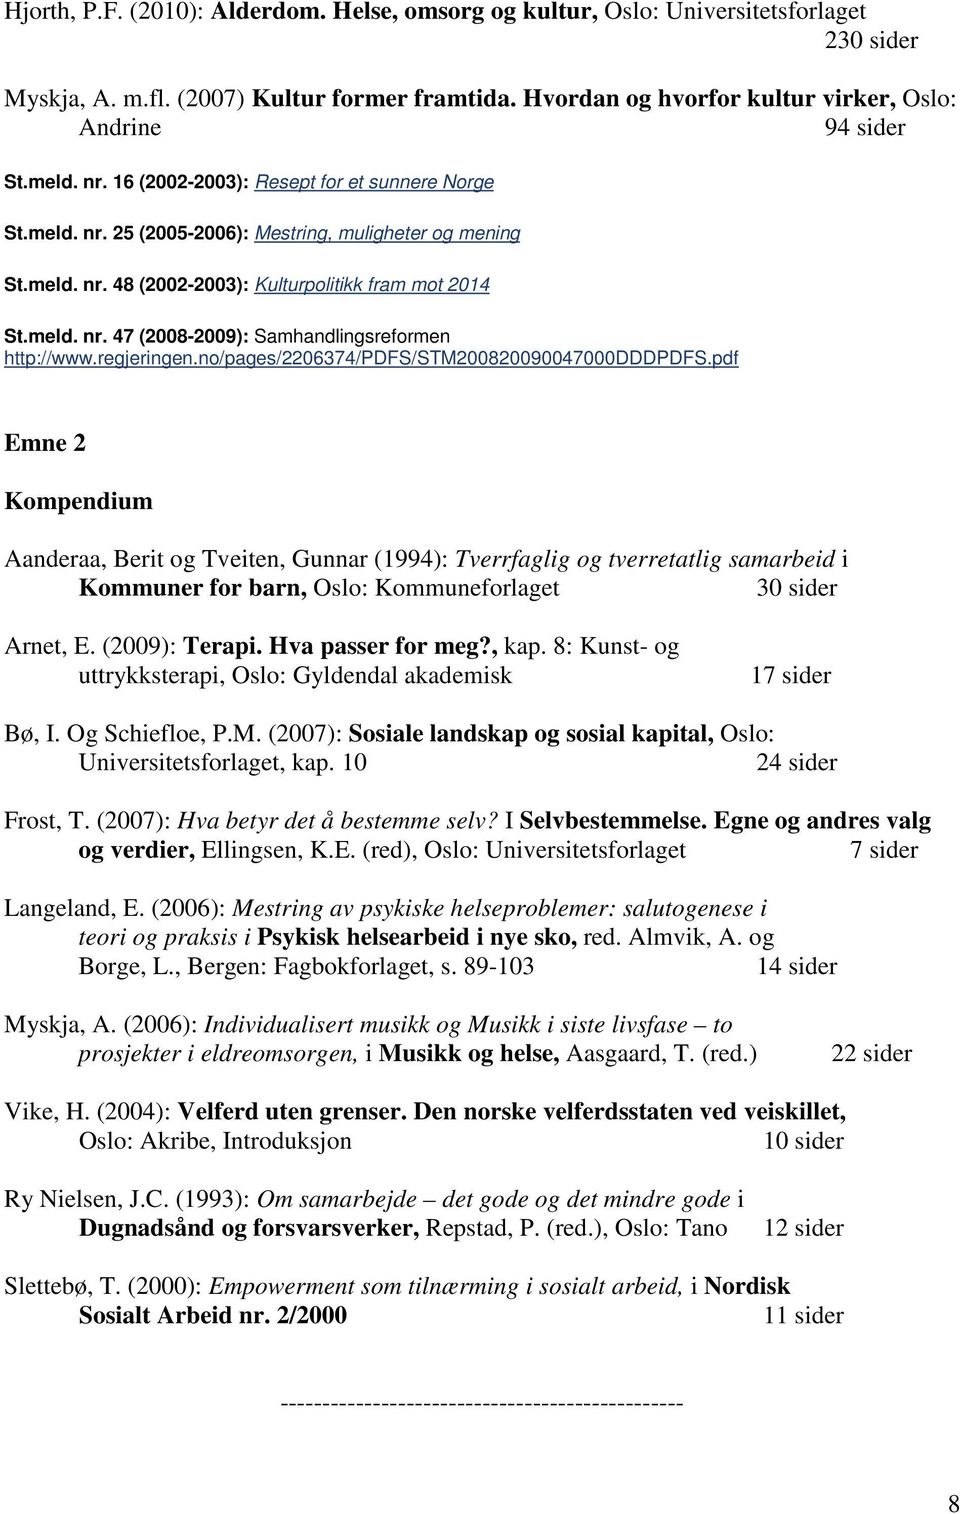 meld. nr. 47 (2008-2009): Samhandlingsreformen http://www.regjeringen.no/pages/2206374/pdfs/stm200820090047000dddpdfs.